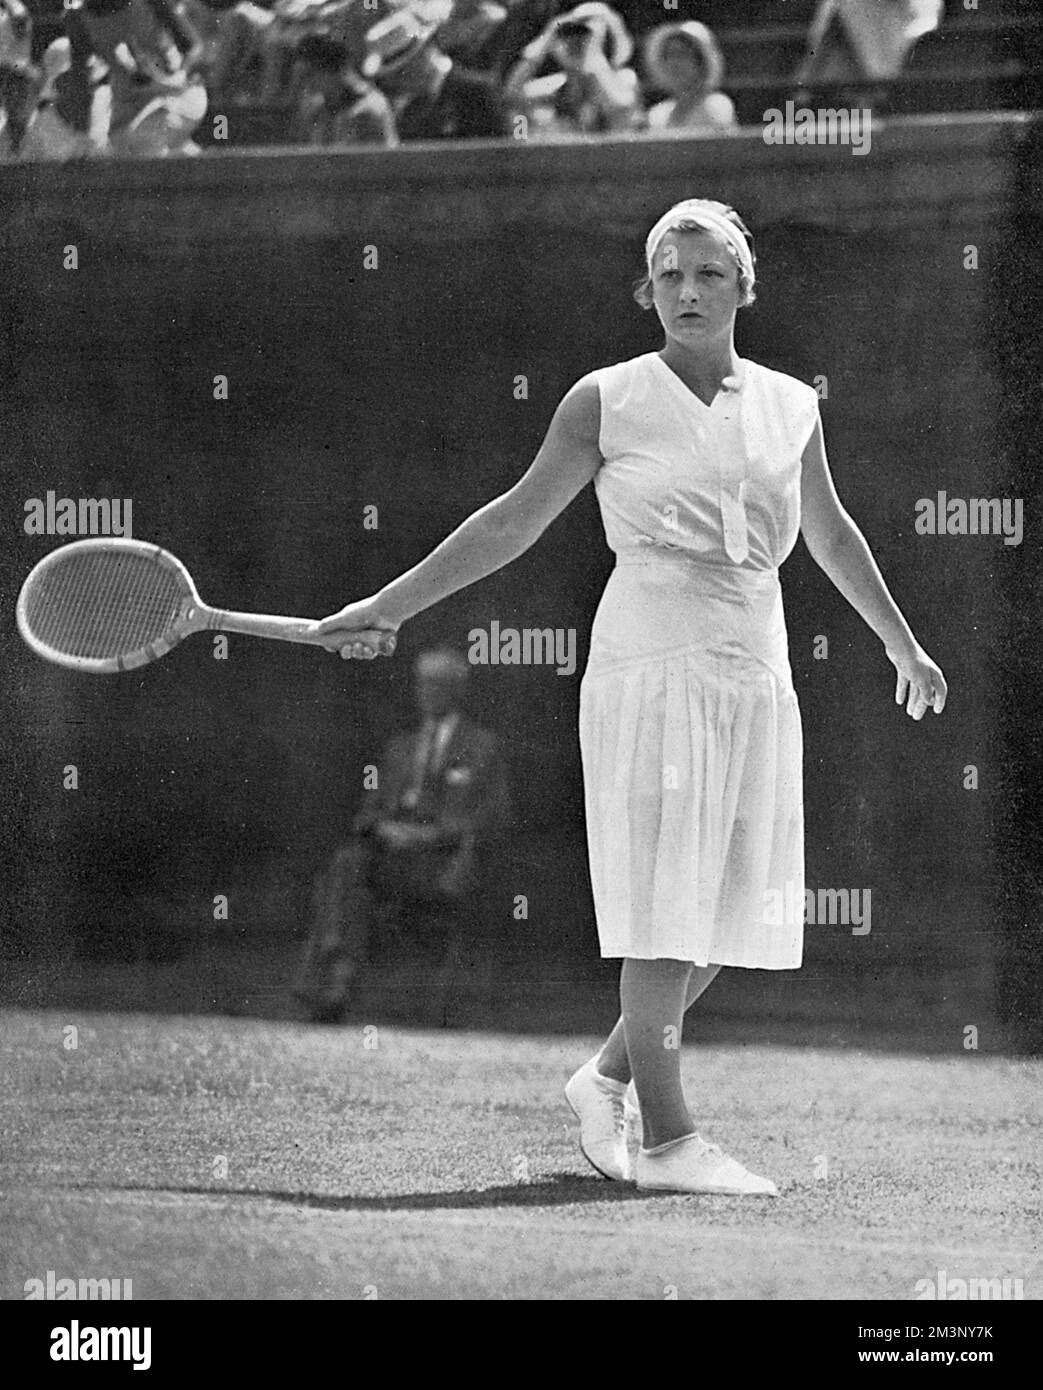 Helen Hull Jacobs (2 juin 1997 6 août 1908), joueuse de tennis américaine n° 1 au monde, qui a remporté dix titres de Grand Chelem. Photo gagnant la finale du championnat féminin des États-Unis à Forest Hills en 1932. Date: 1932 Banque D'Images